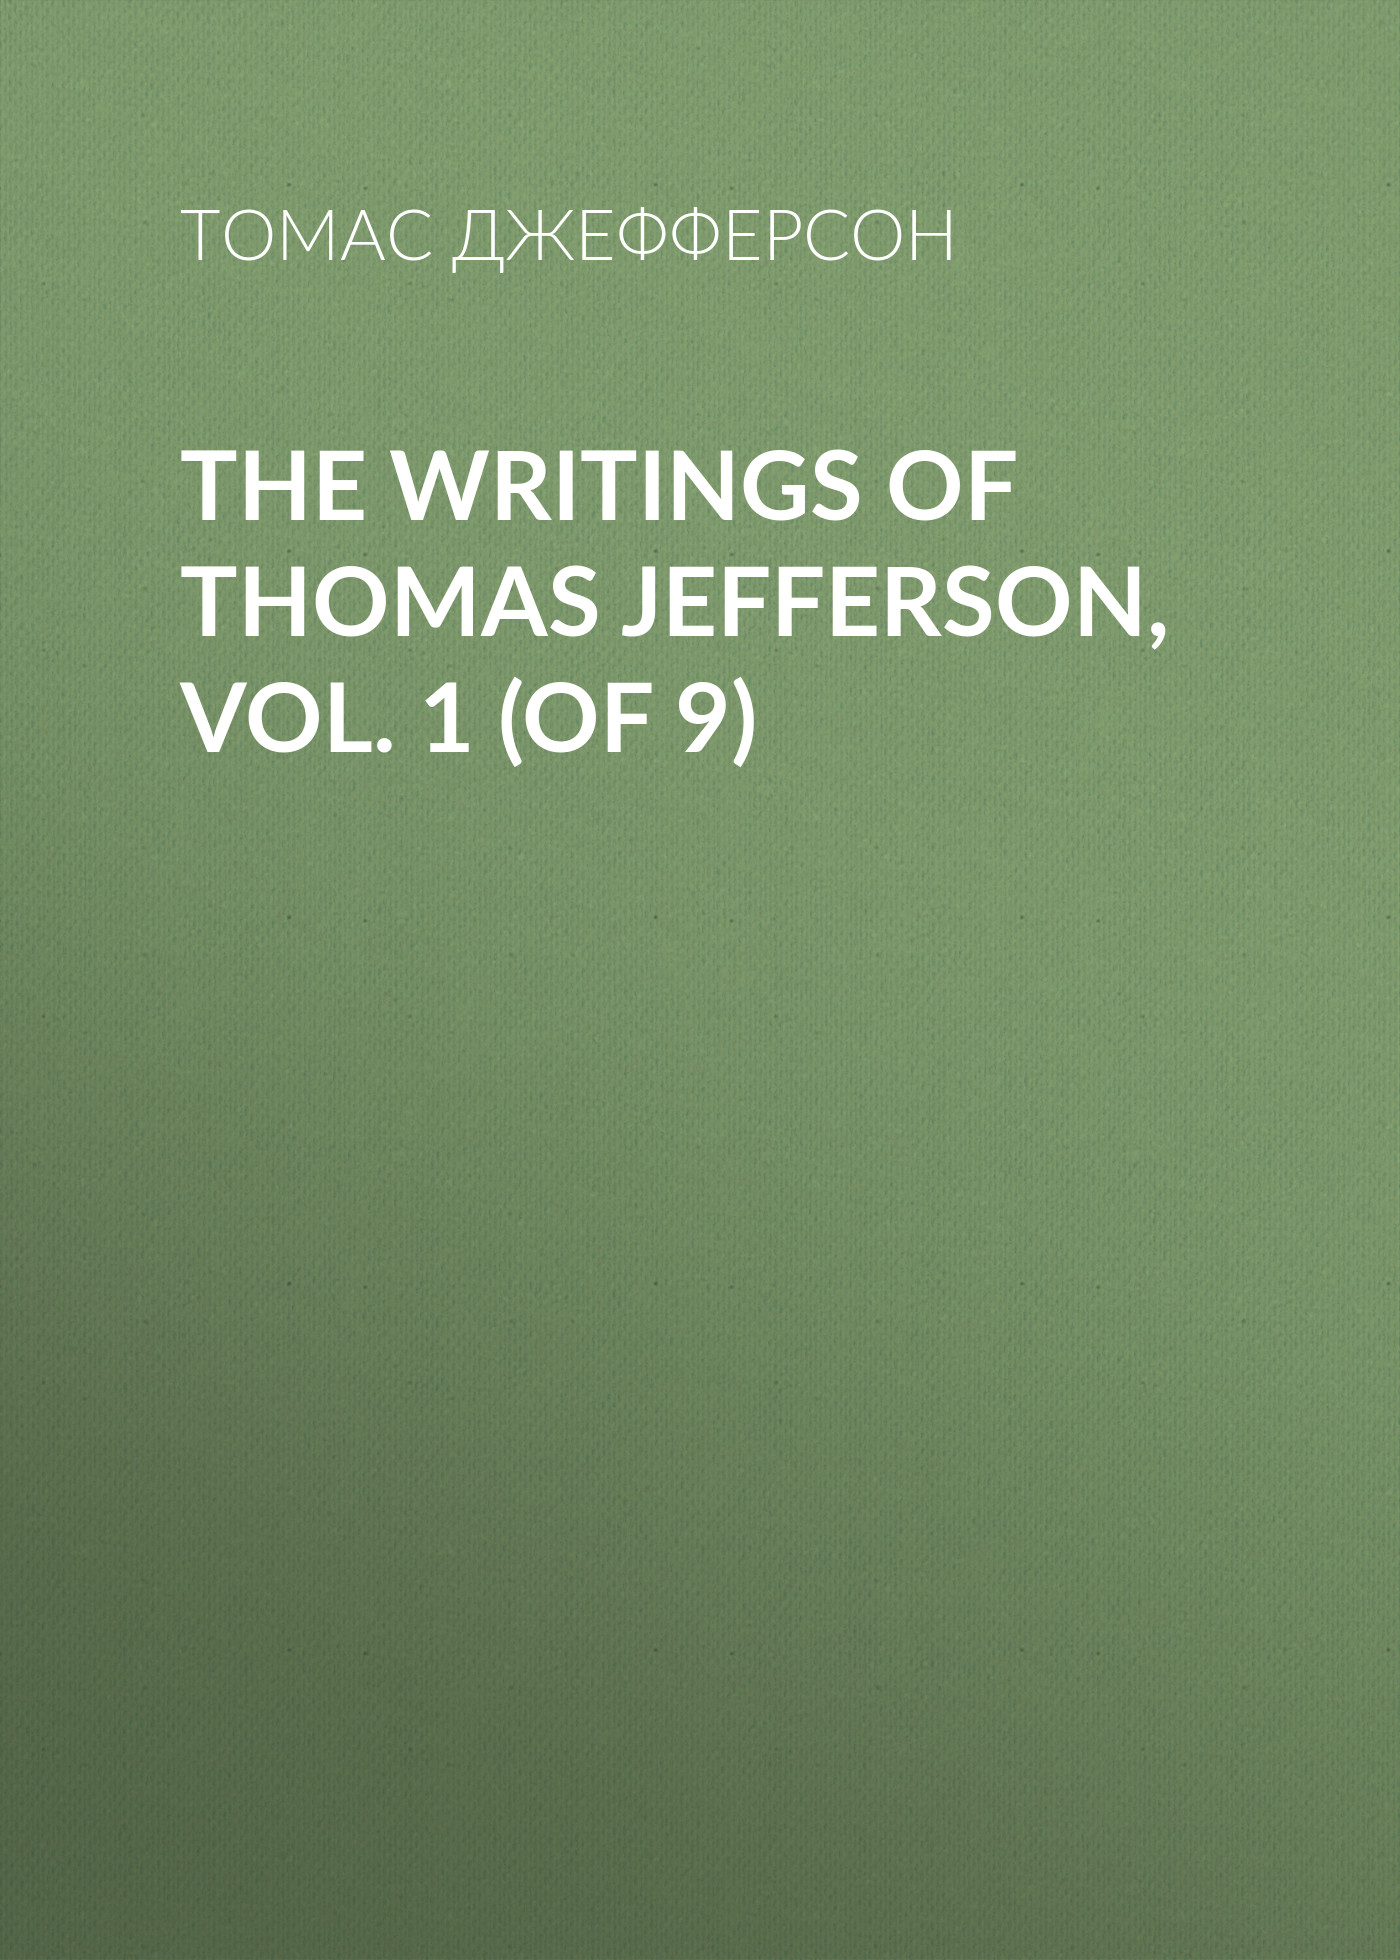 Книга The Writings of Thomas Jefferson, Vol. 1 (of 9) из серии , созданная Томас Джефферсон, может относится к жанру Биографии и Мемуары, Зарубежная старинная литература. Стоимость электронной книги The Writings of Thomas Jefferson, Vol. 1 (of 9) с идентификатором 34838902 составляет 0 руб.